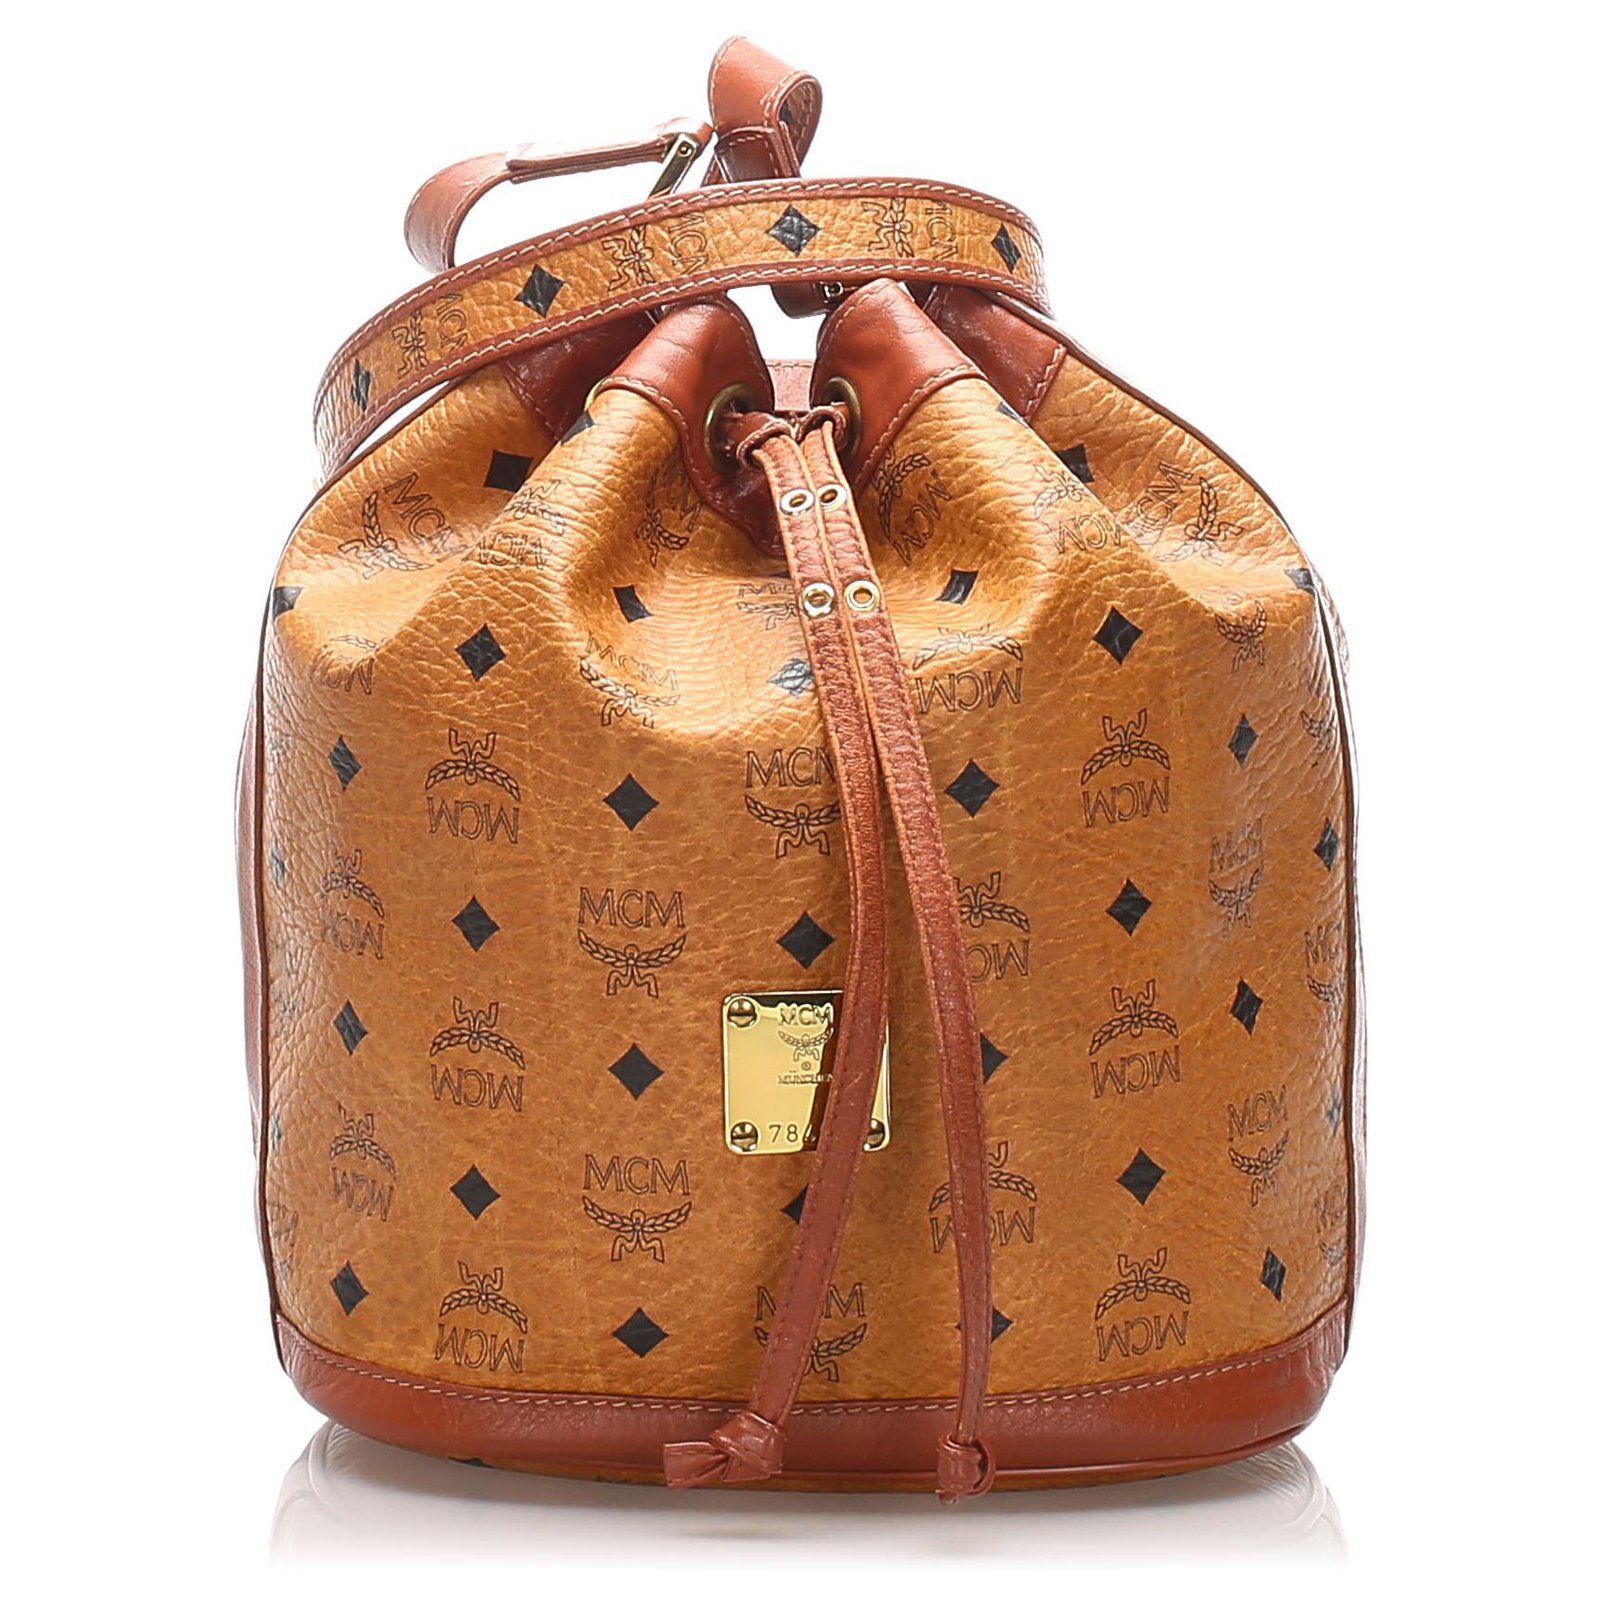 Vintage-Style MCM Leather Bucket Drawstring Shoulder Bag for Ladies